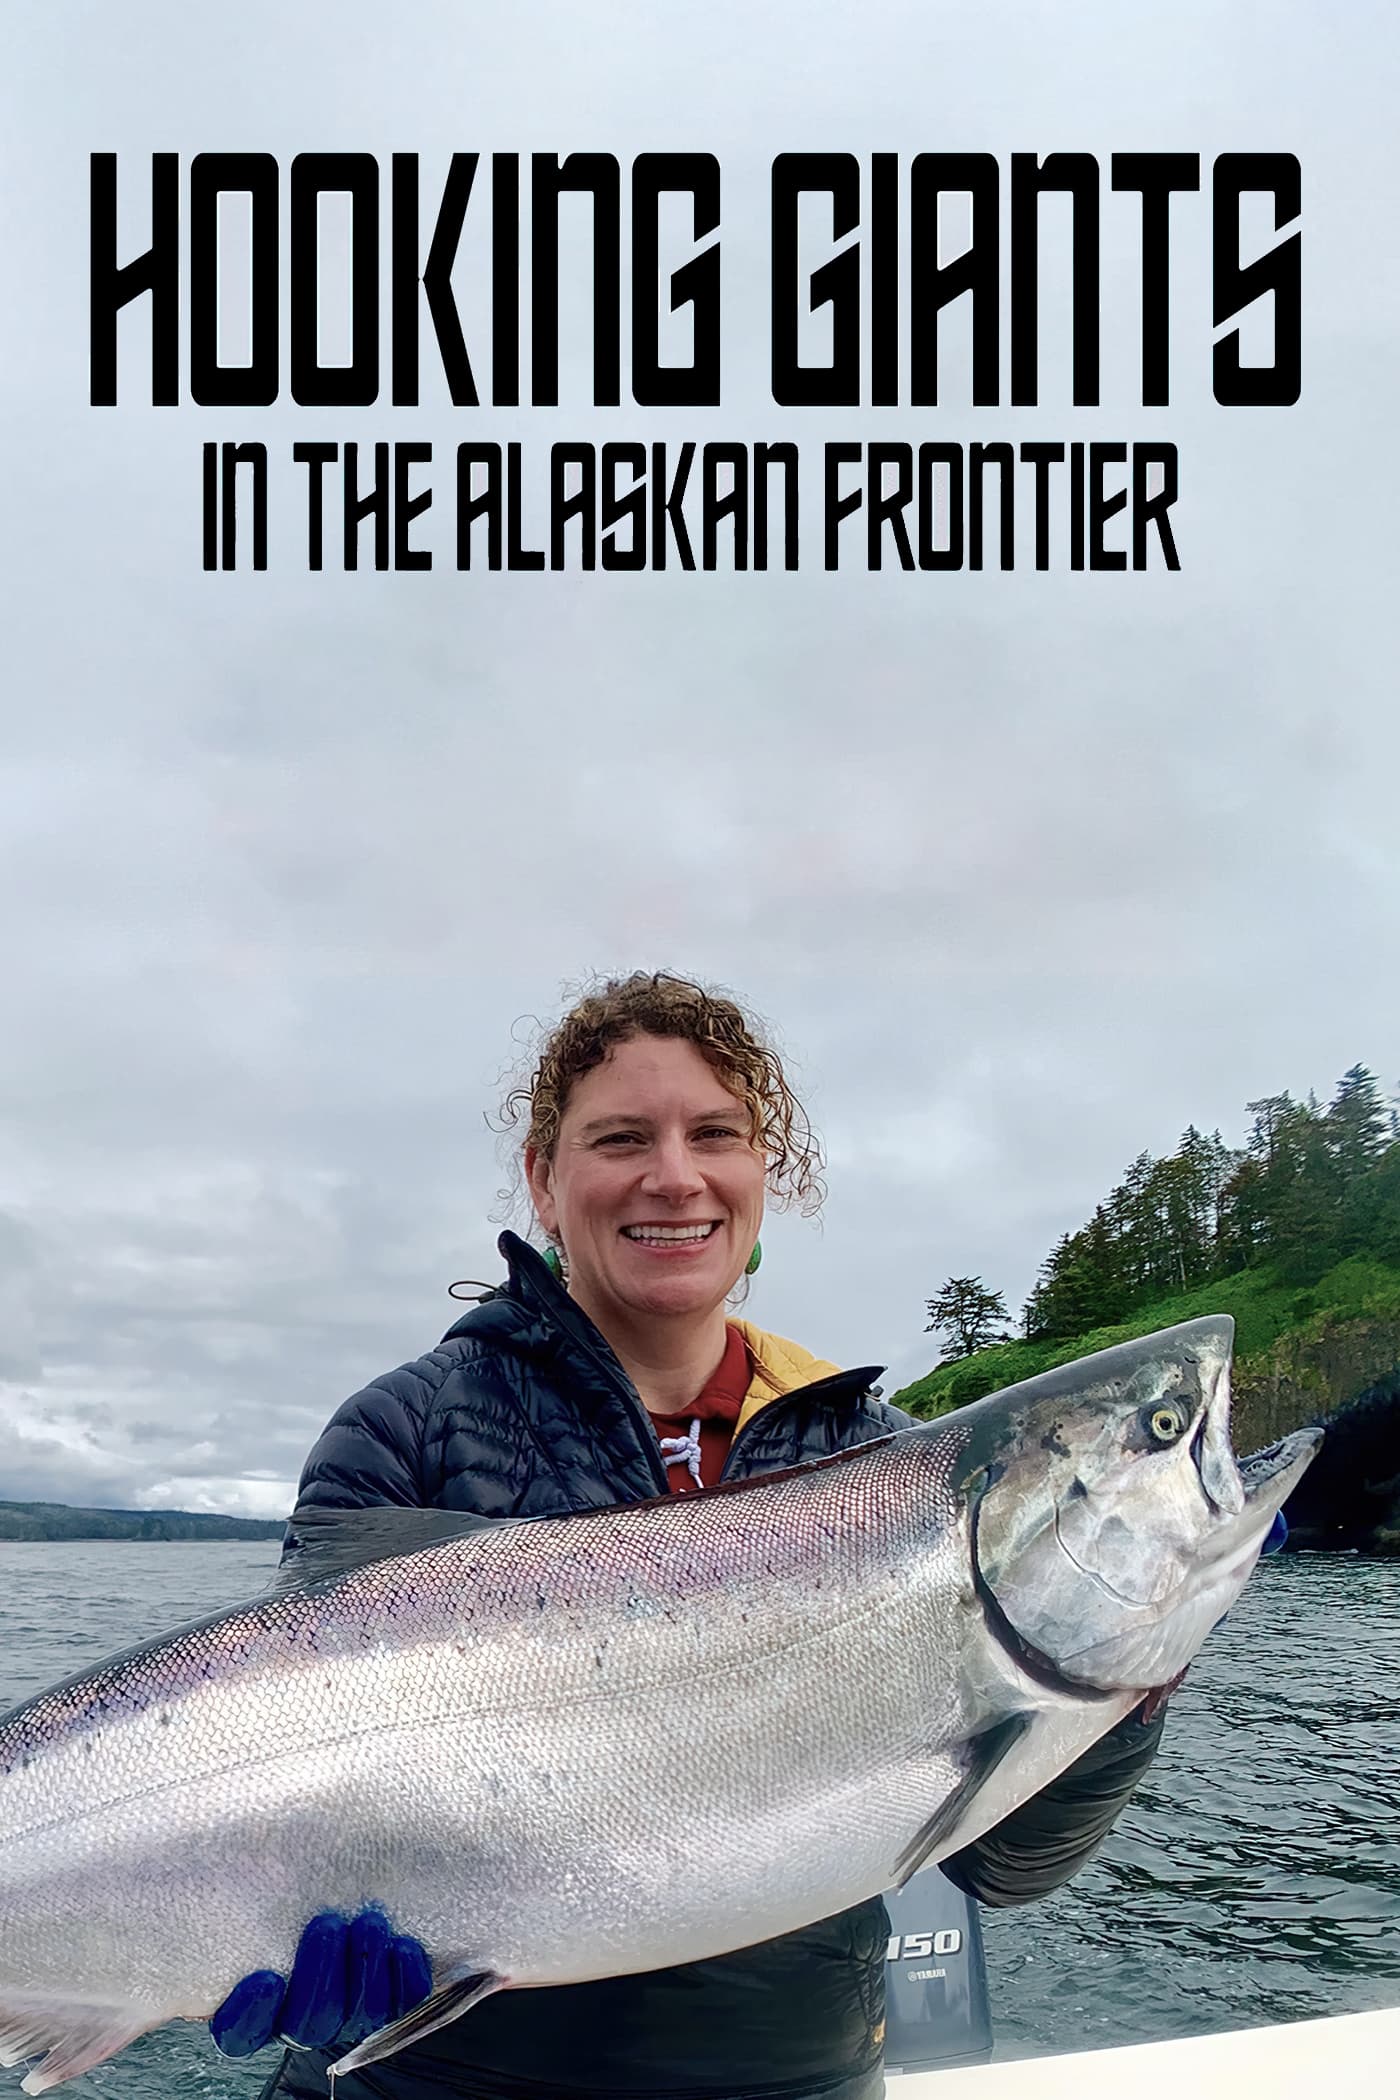 Hooking Giants in the Alaskan Frontier